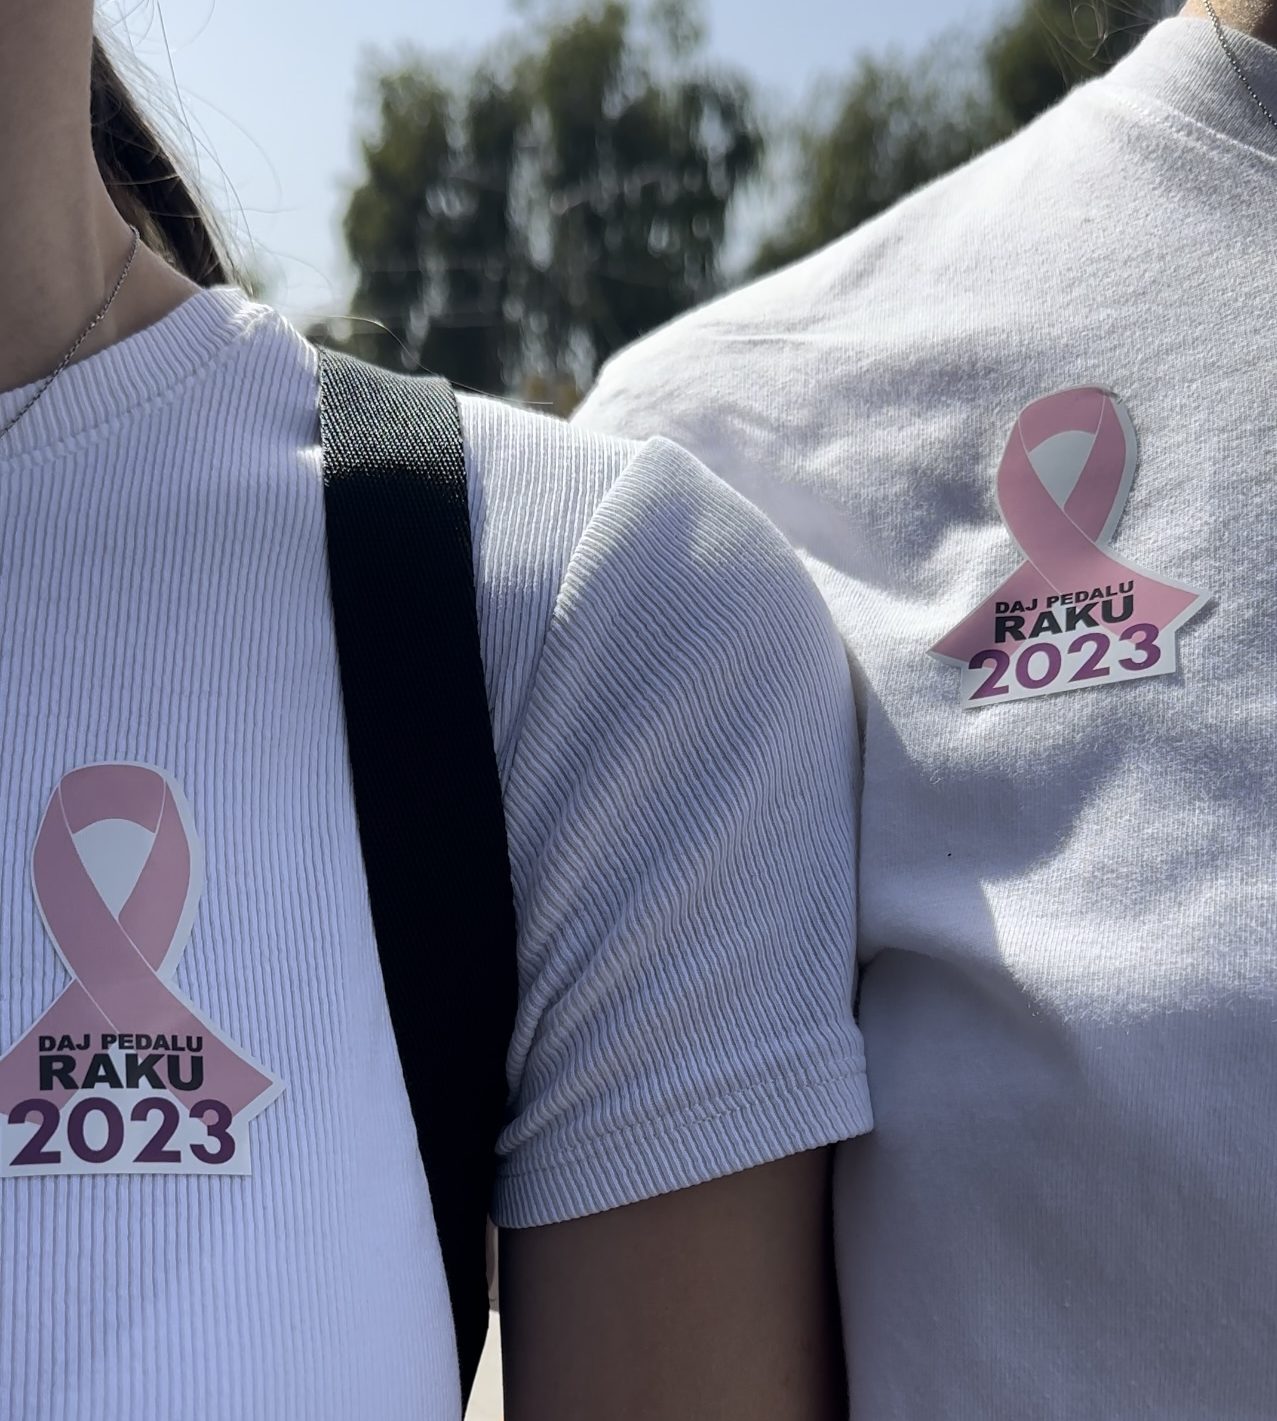 Biciklijada “Daj pedalu raku“ u Novom Pazaru – Podrška ženama u procesu lečenja raka dojke i raka grlića materice